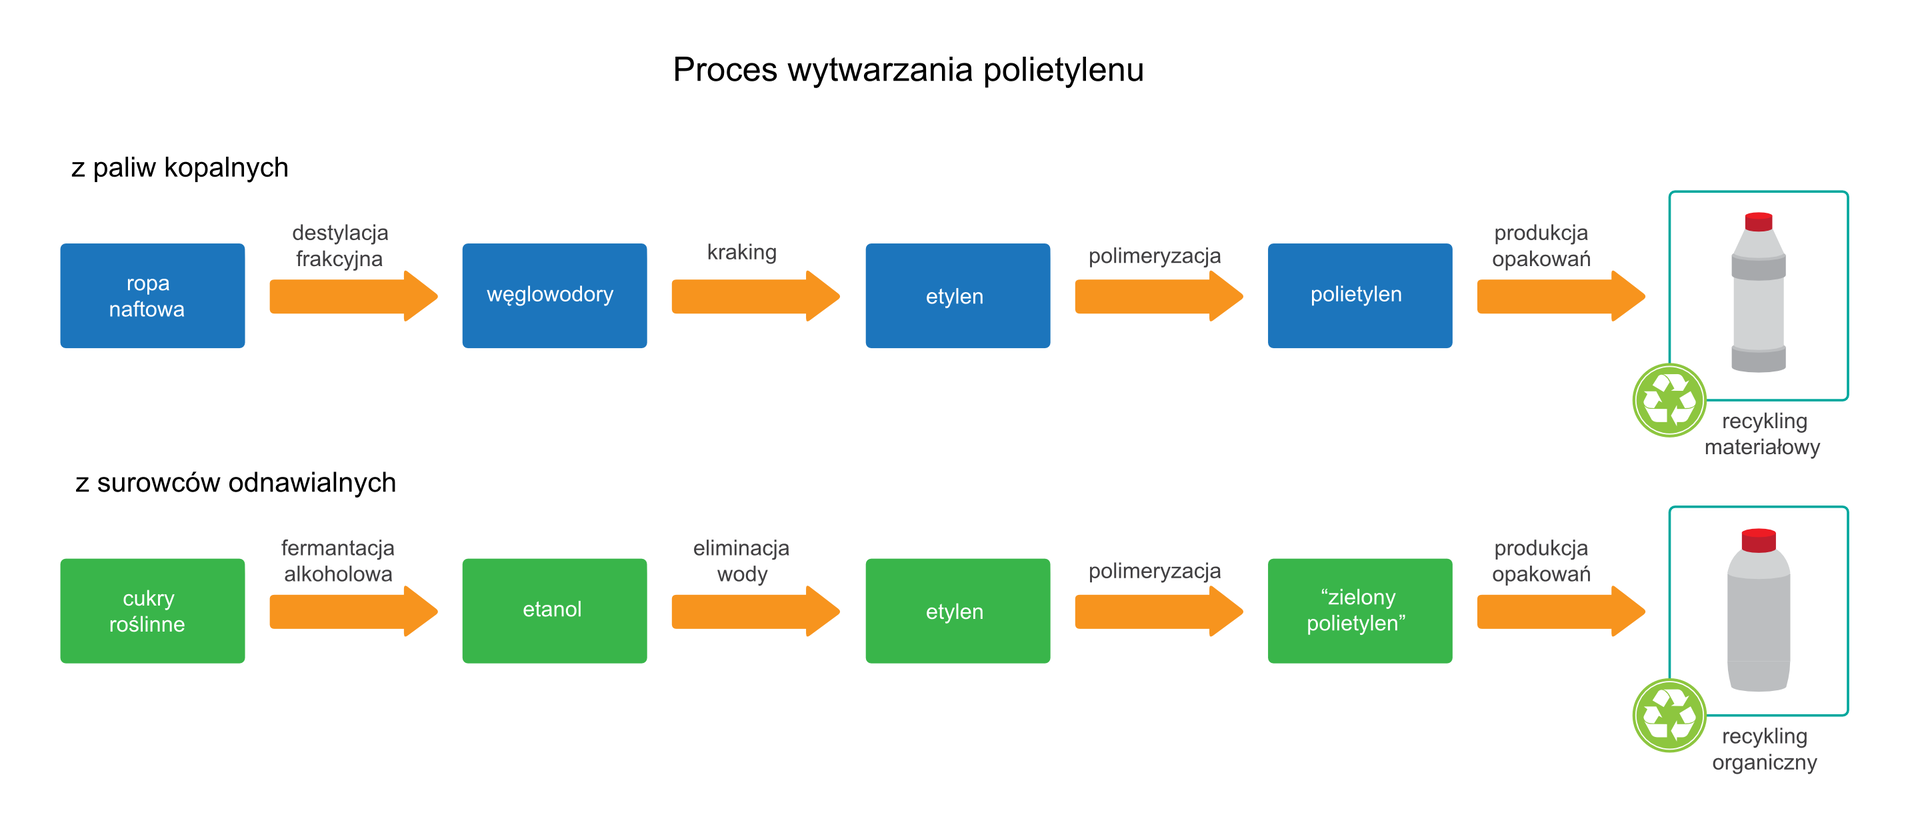 Proces wytwarzania polietylenu